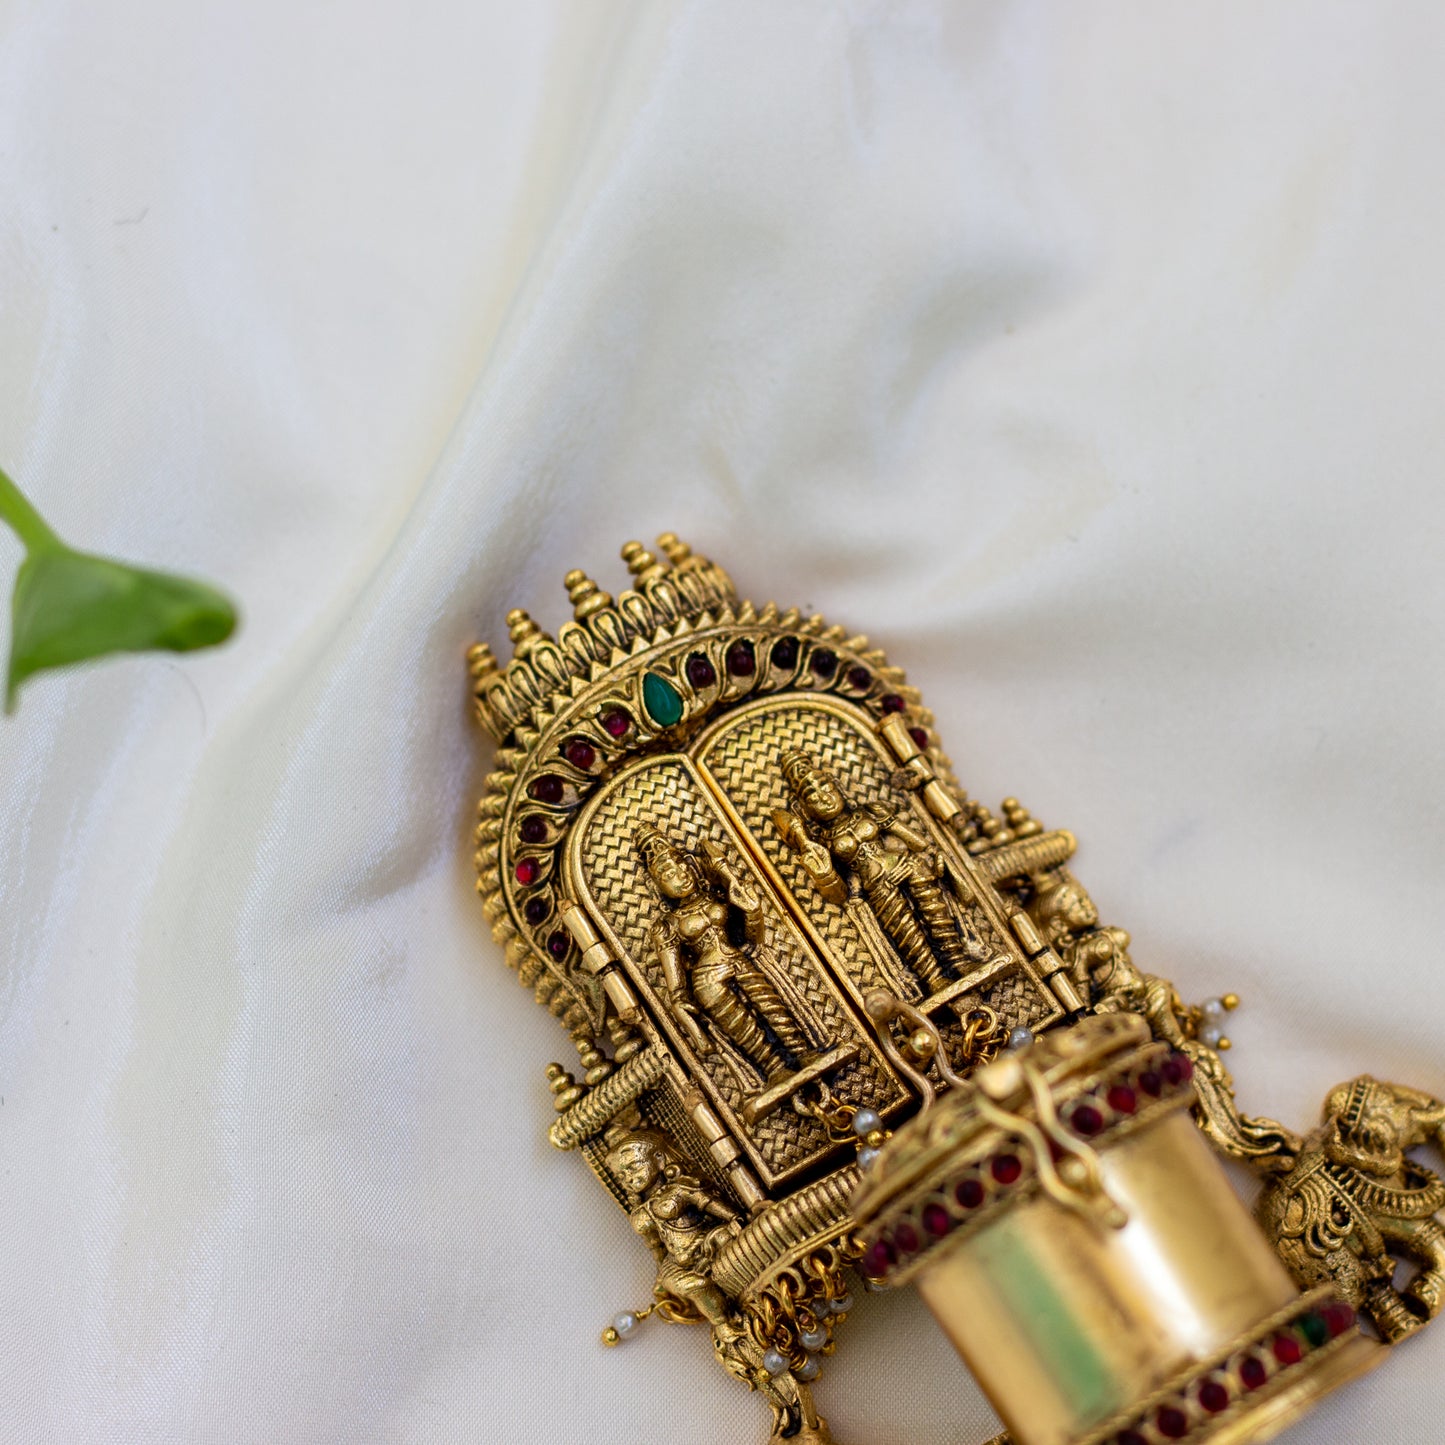 Antique Gold Shiva Parvathi with Dwarapalakas Nakshi Design Kum Kum Box